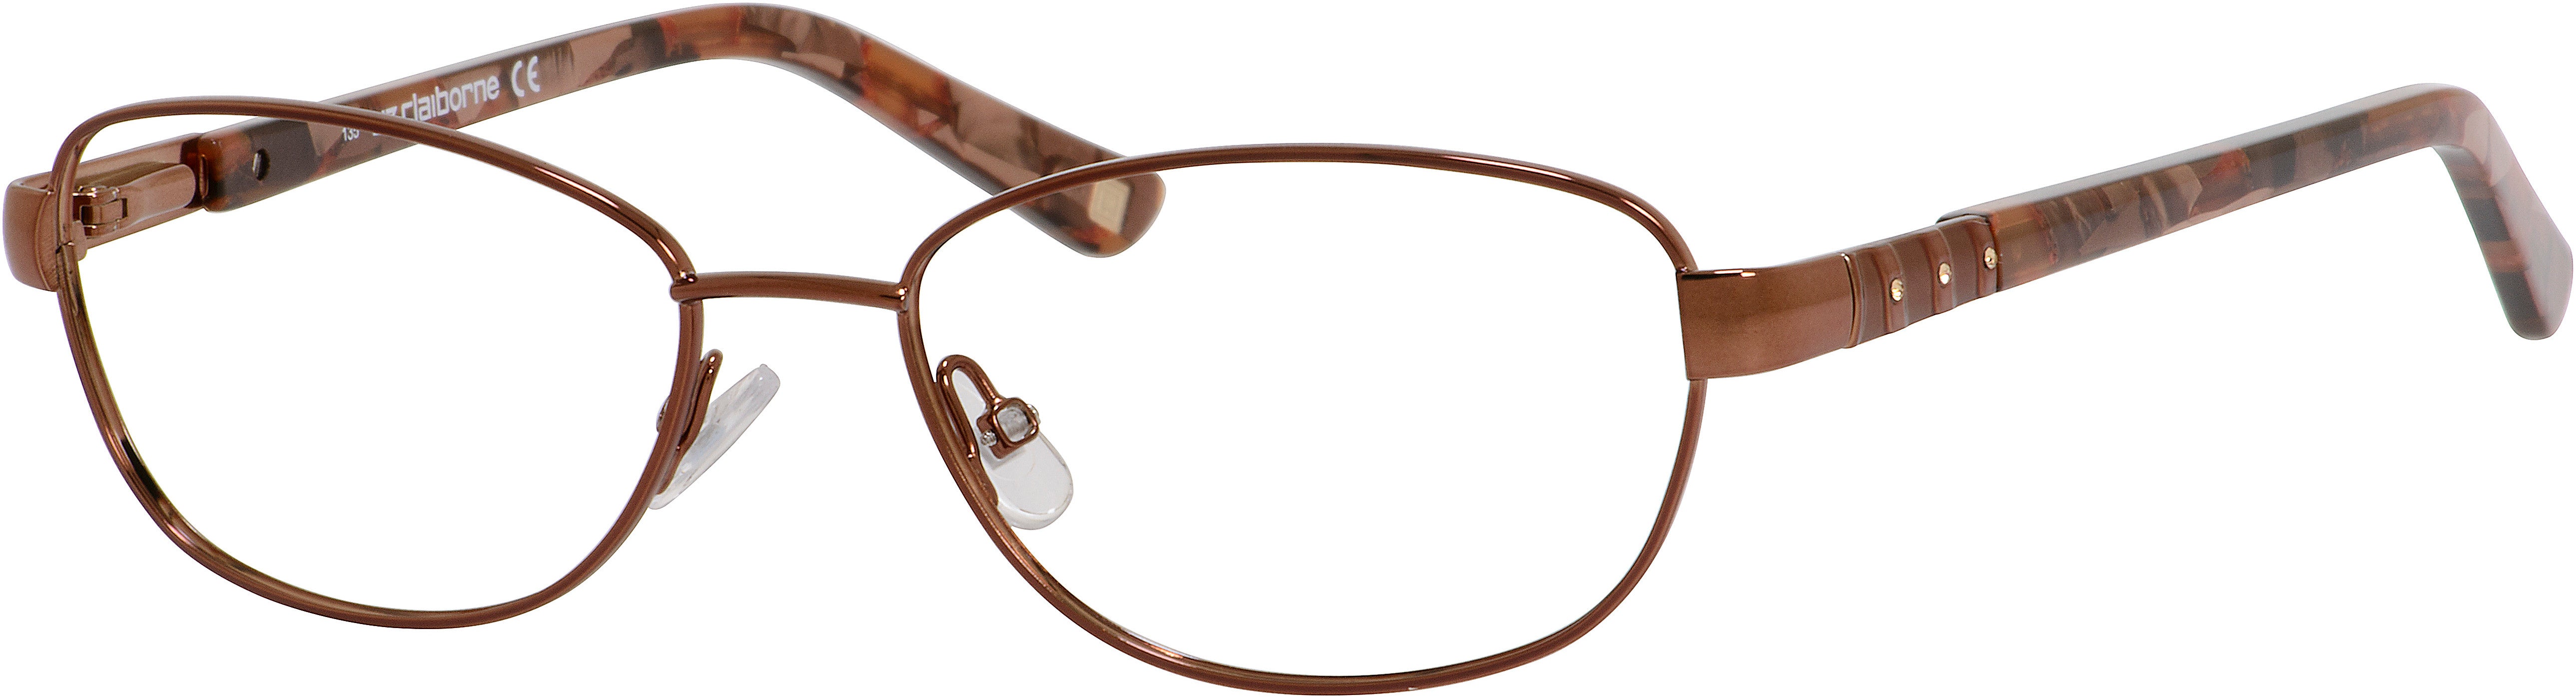  Liz Claiborne 613 Oval Eyeglasses 0FV8-0FV8  Brown (00 Demo Lens)